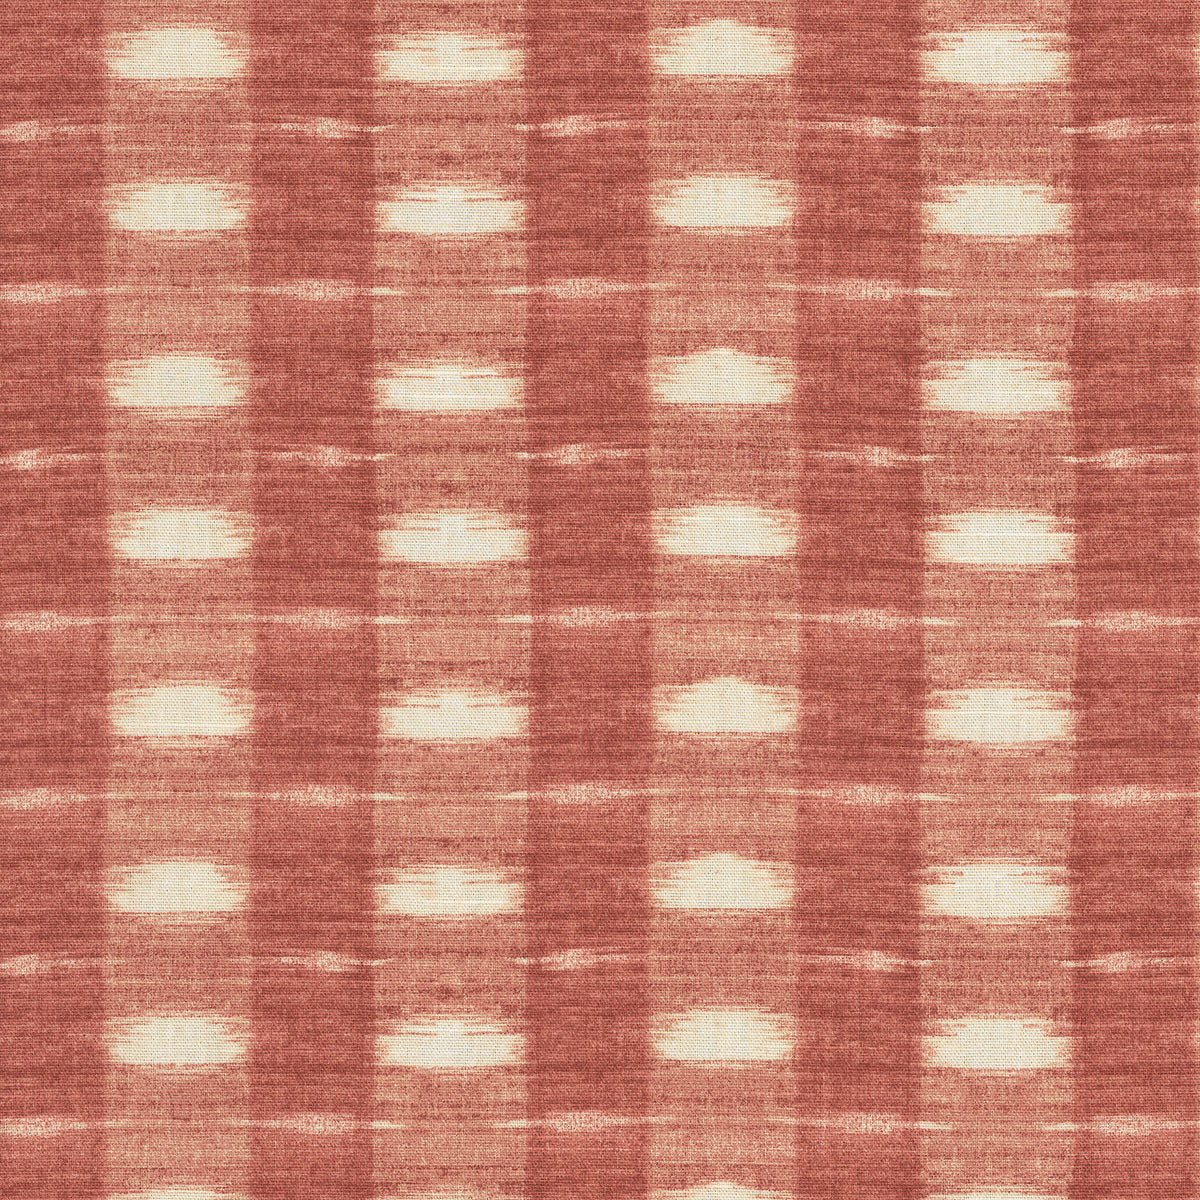 P/K Lifestyles Brushed Check - Radish 412392 Upholstery Fabric